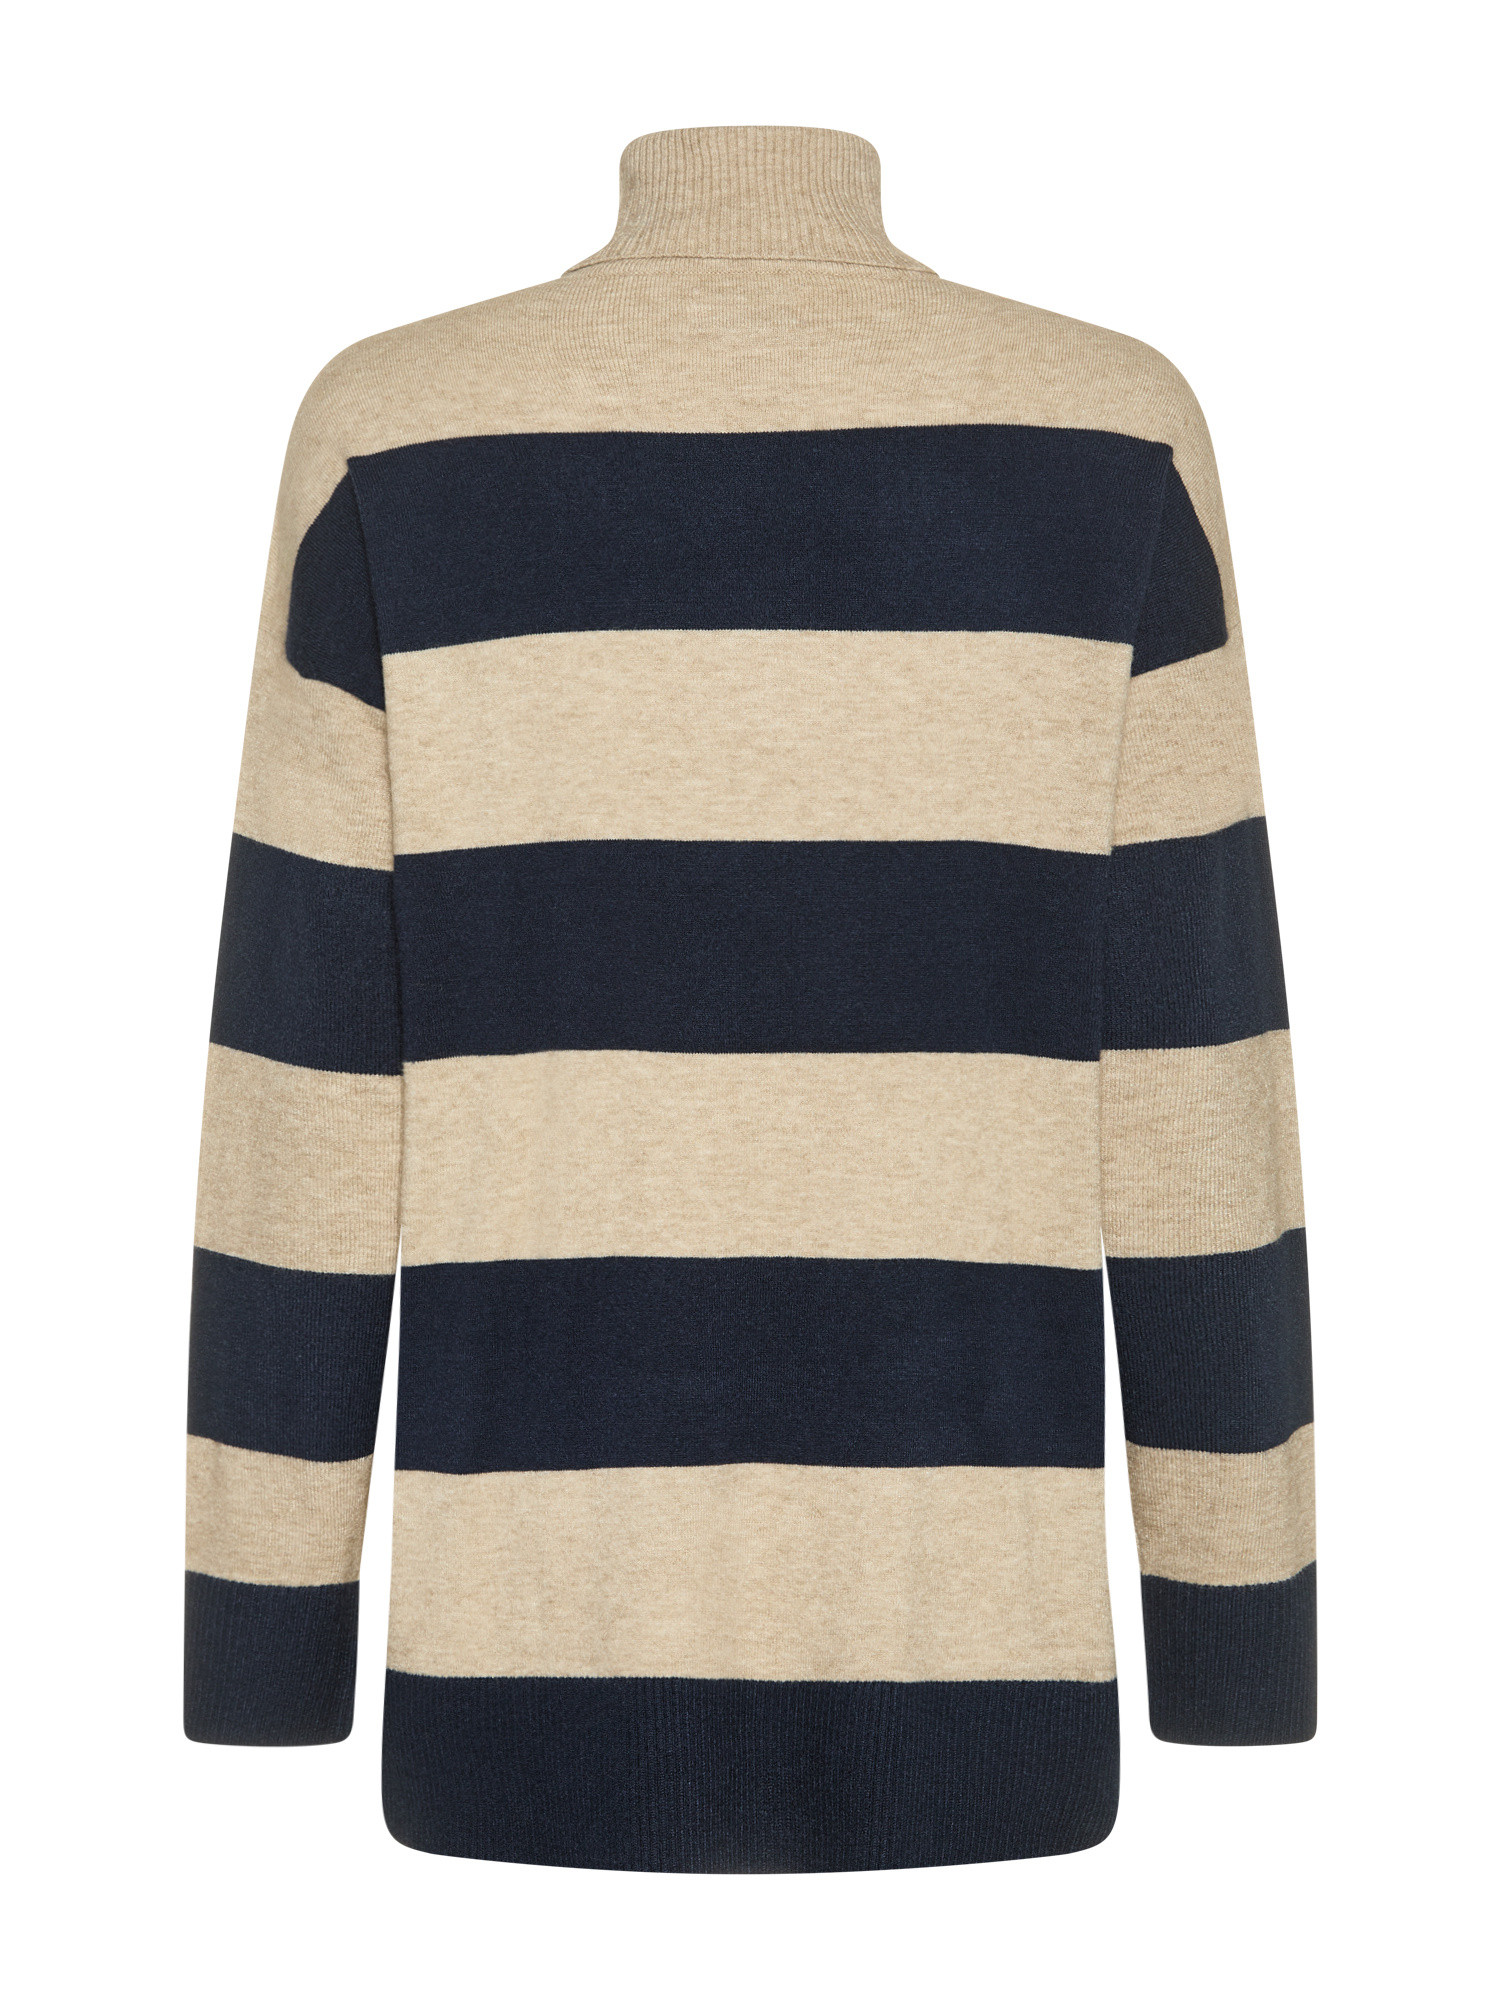 Only - Striped knit turtleneck, Light Beige, large image number 1